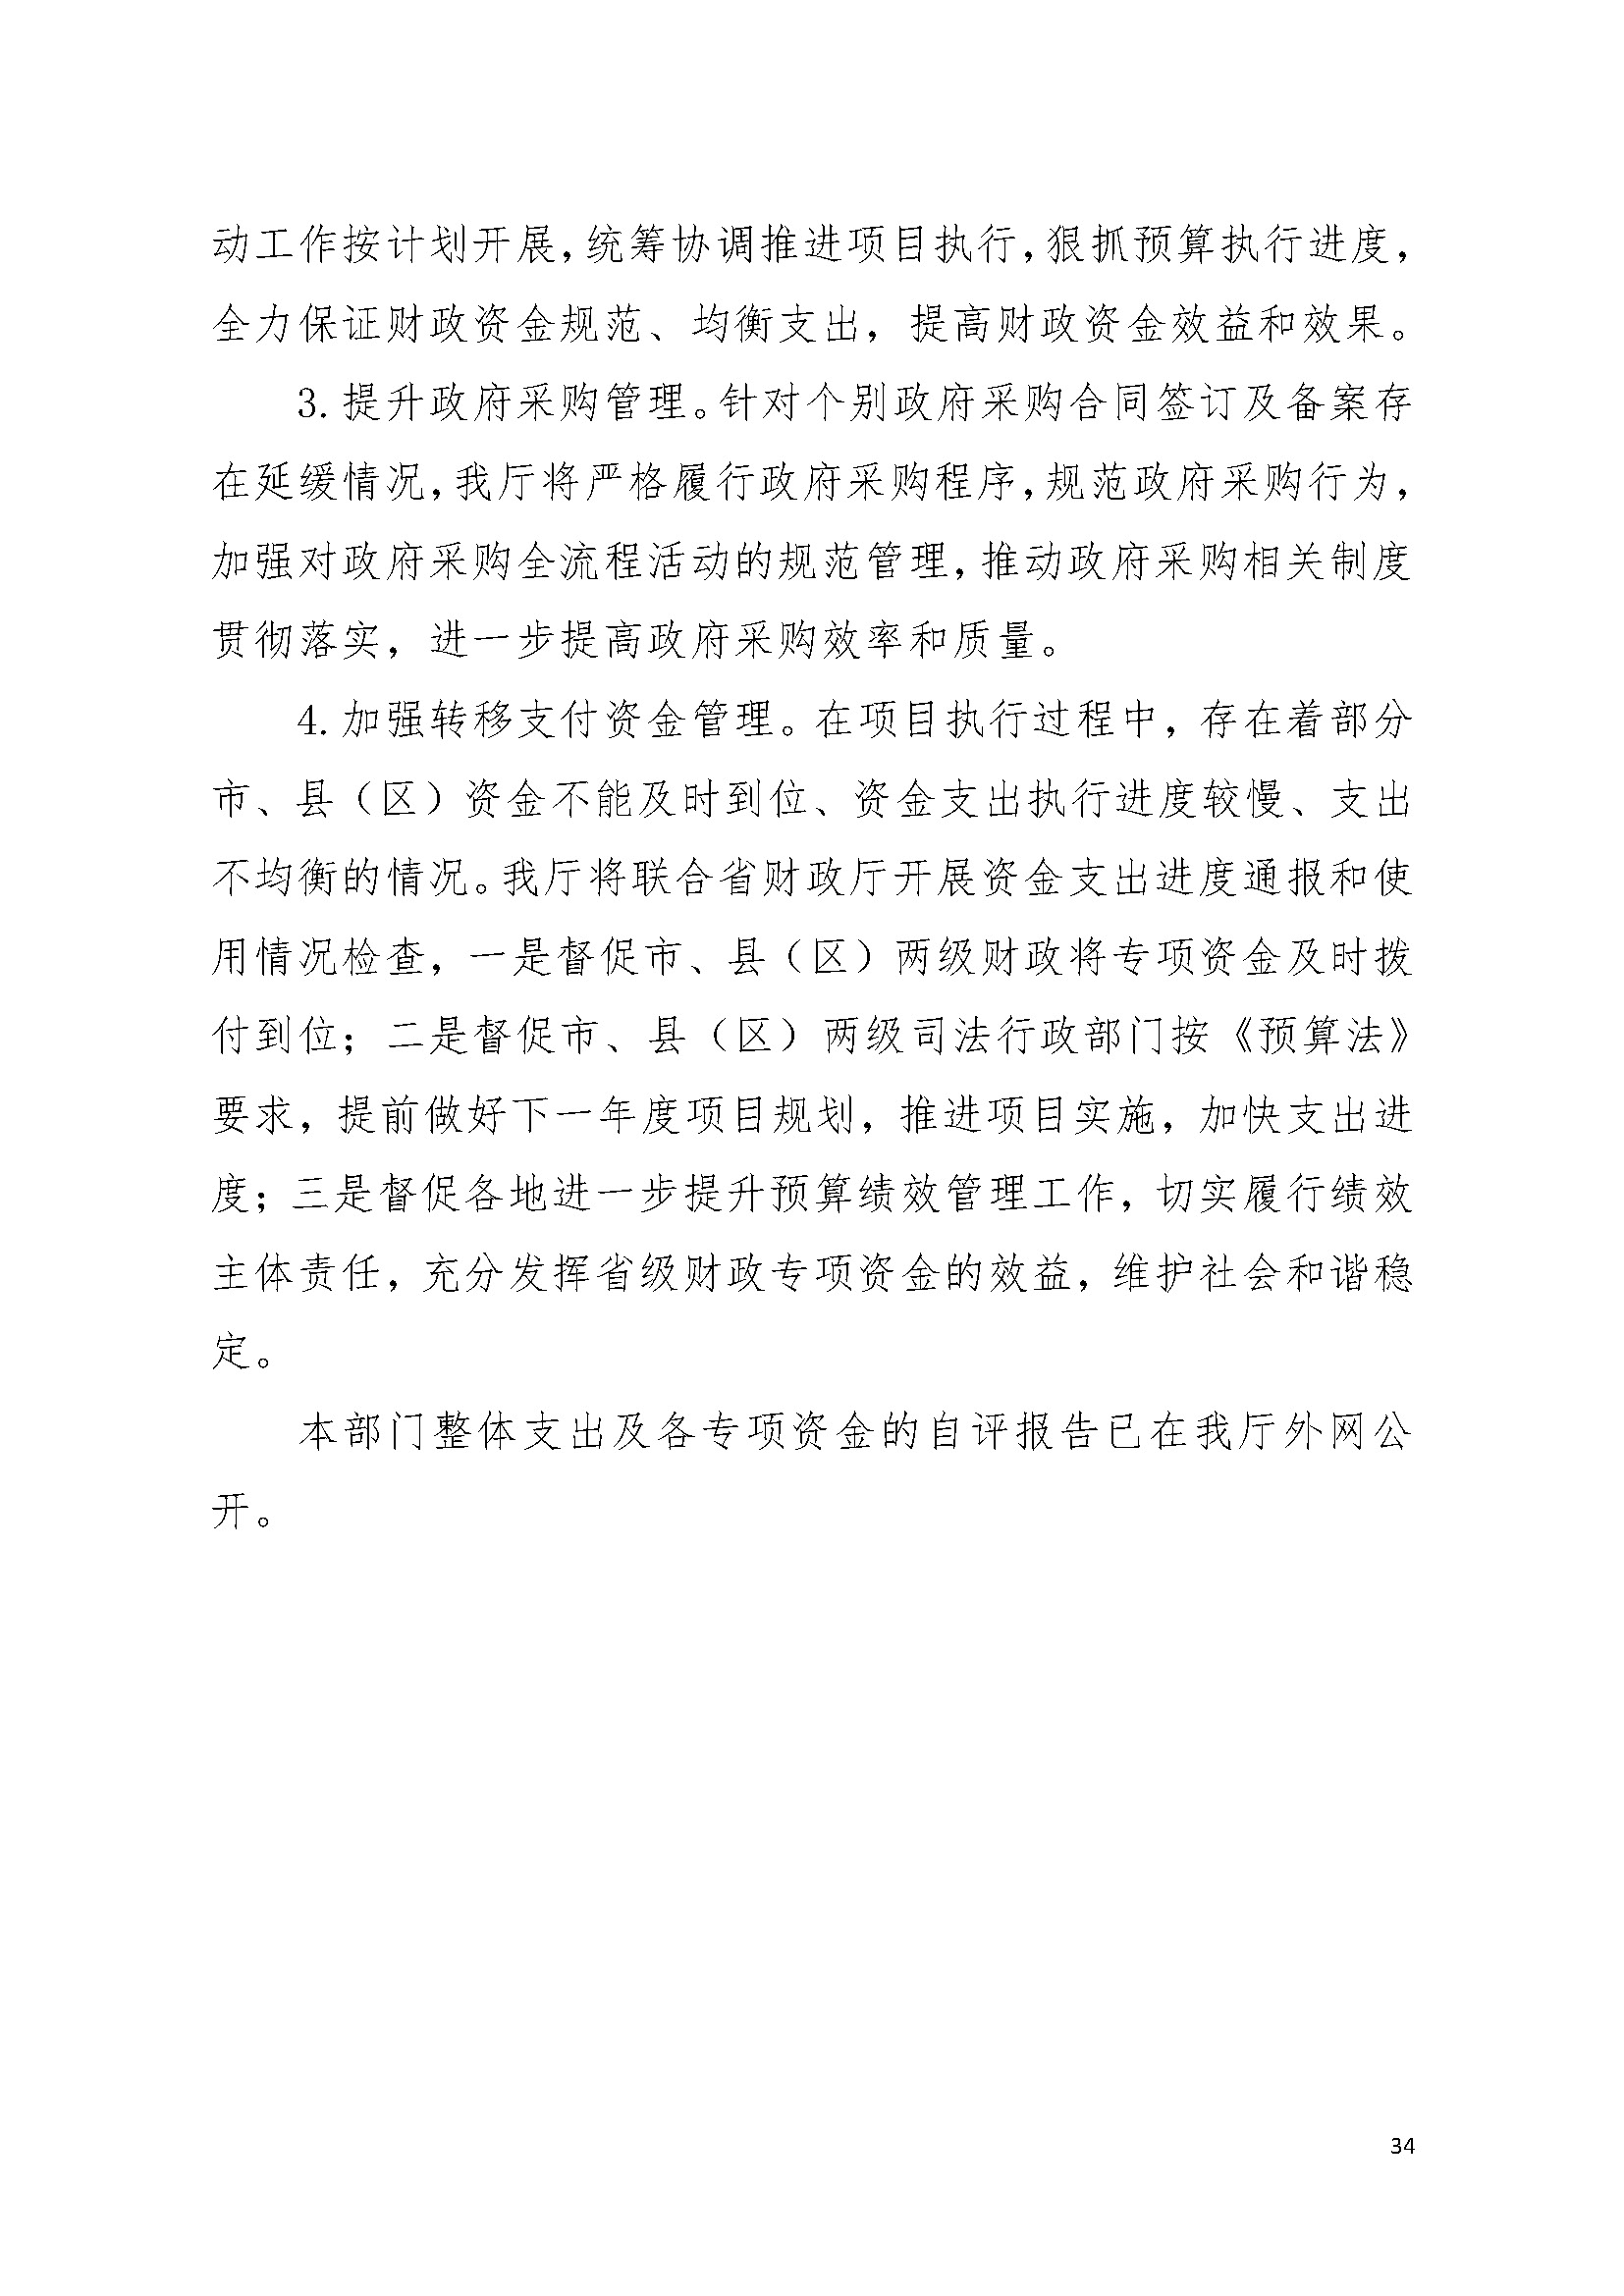 2022年度广东省司法厅部门决算__页面_34.jpg